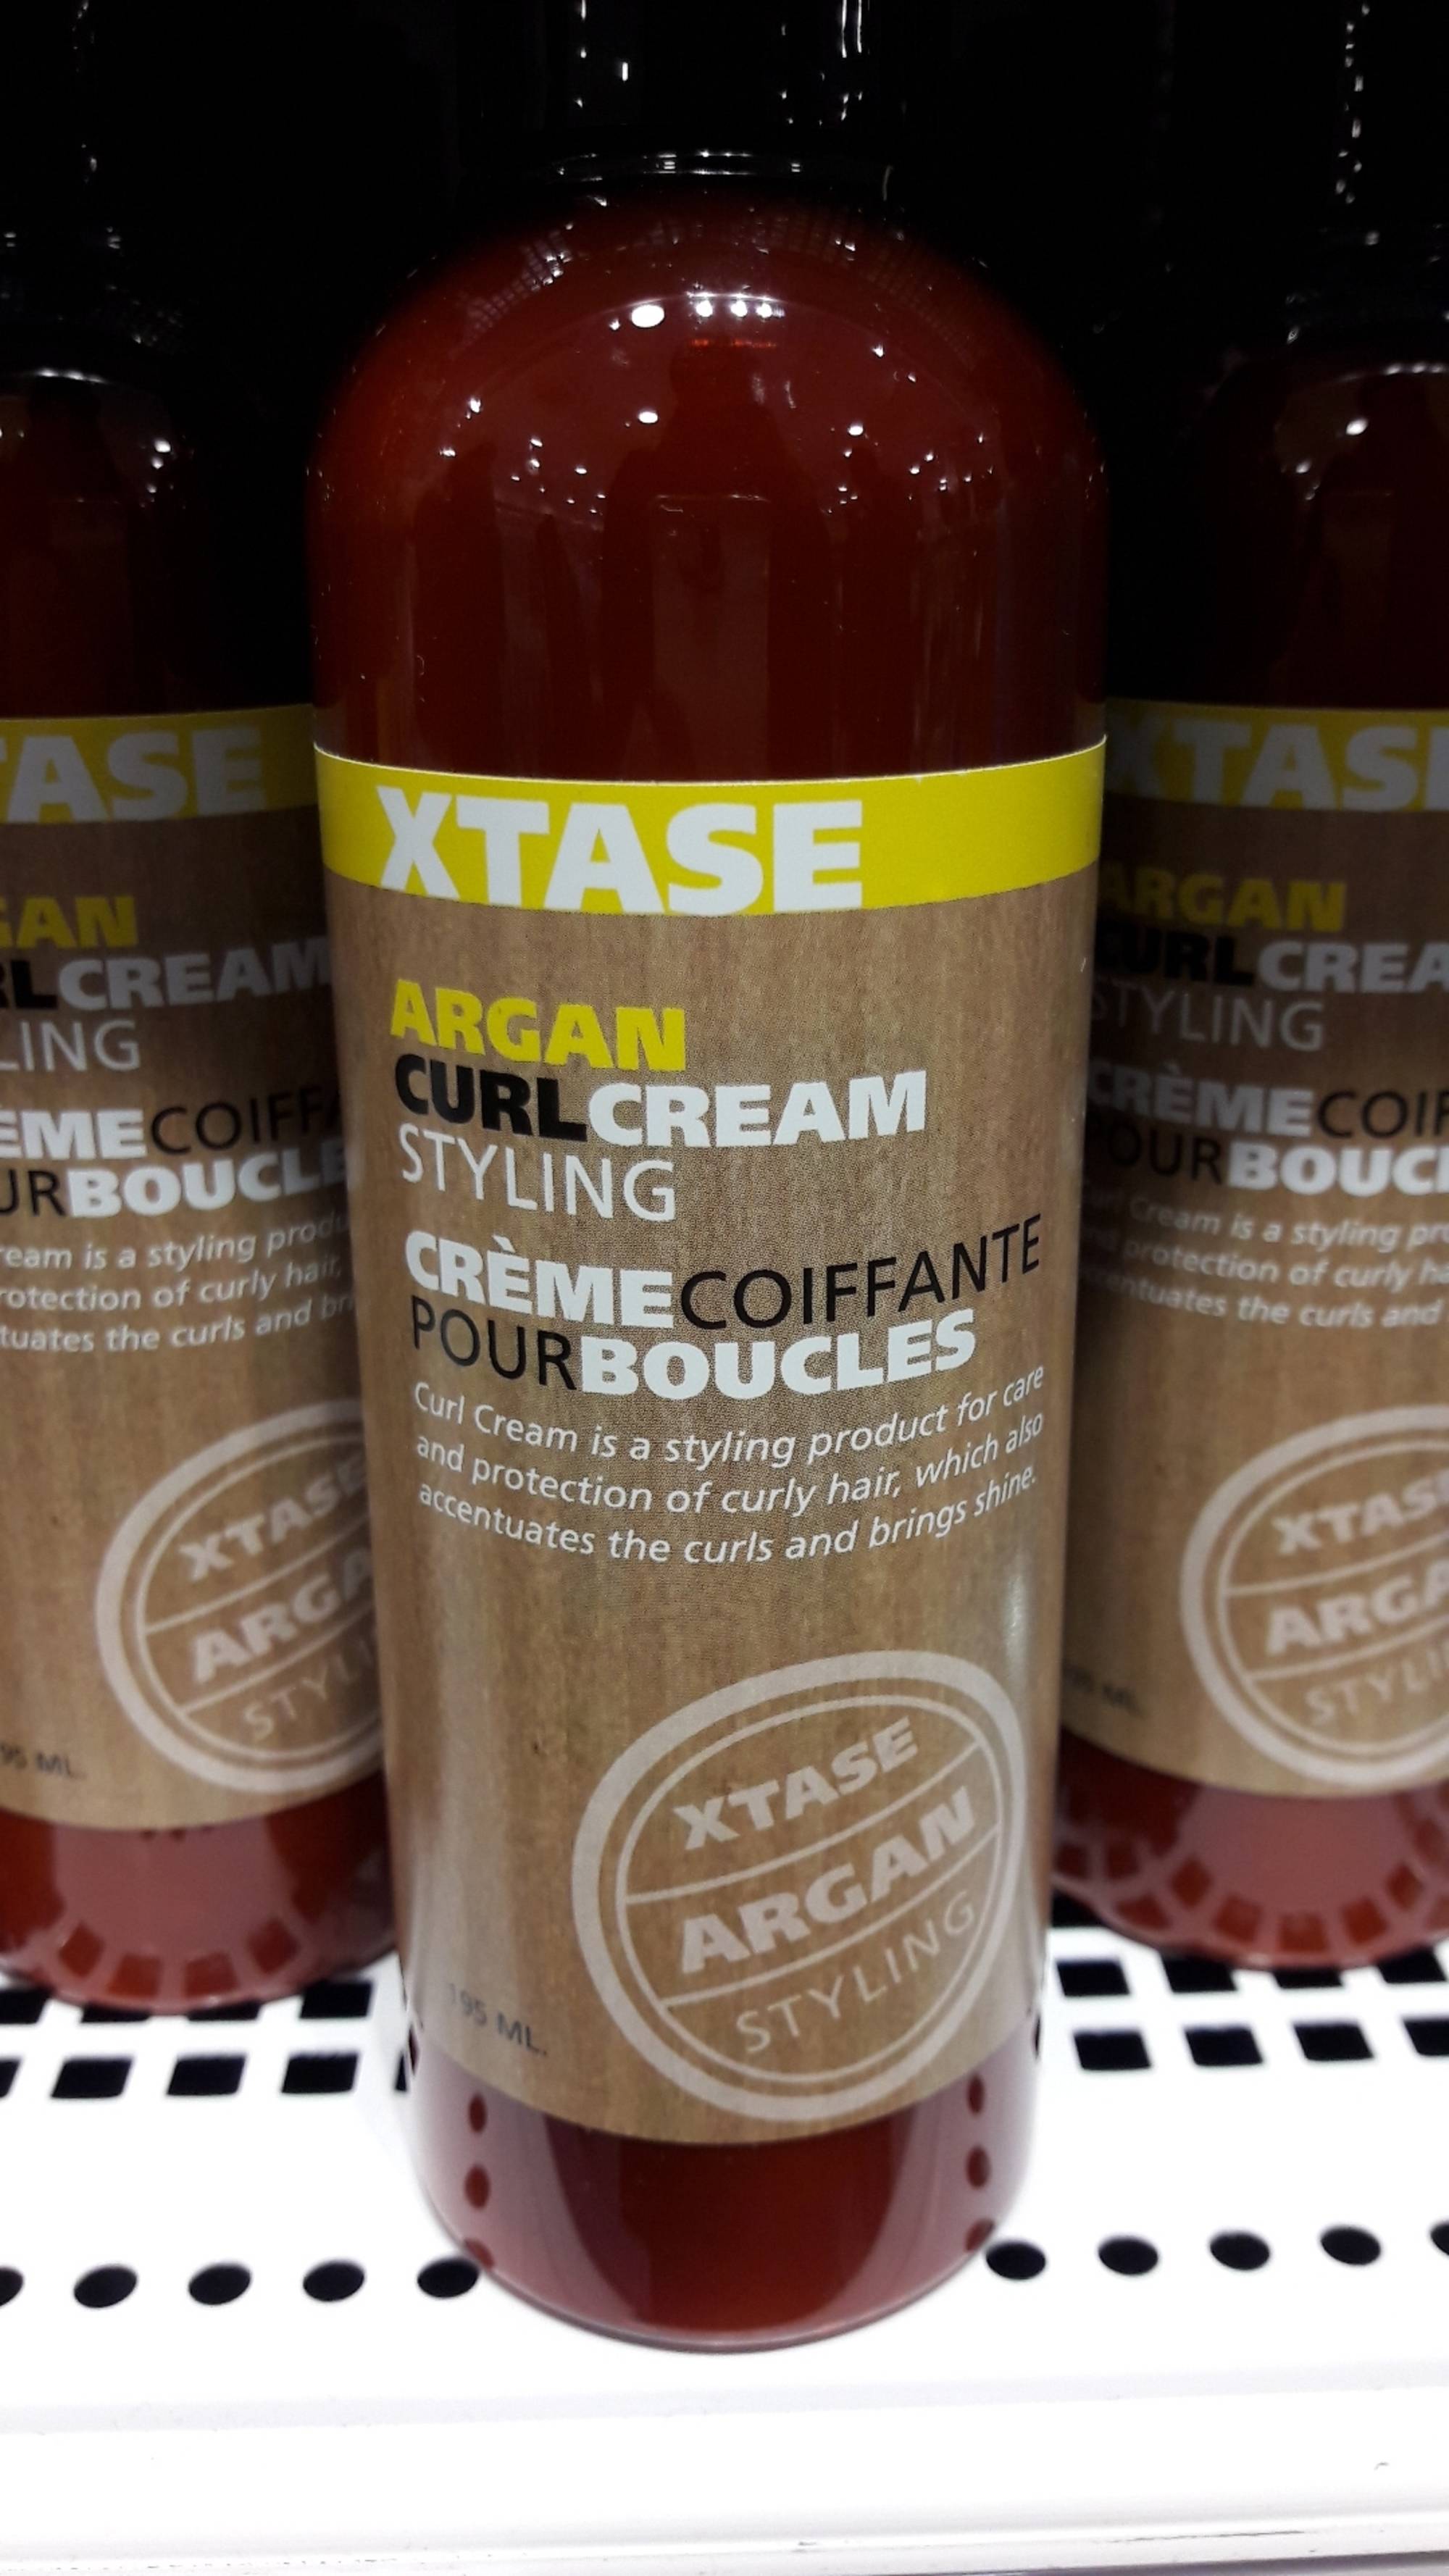 XTASE - Crème coiffante pour boucles